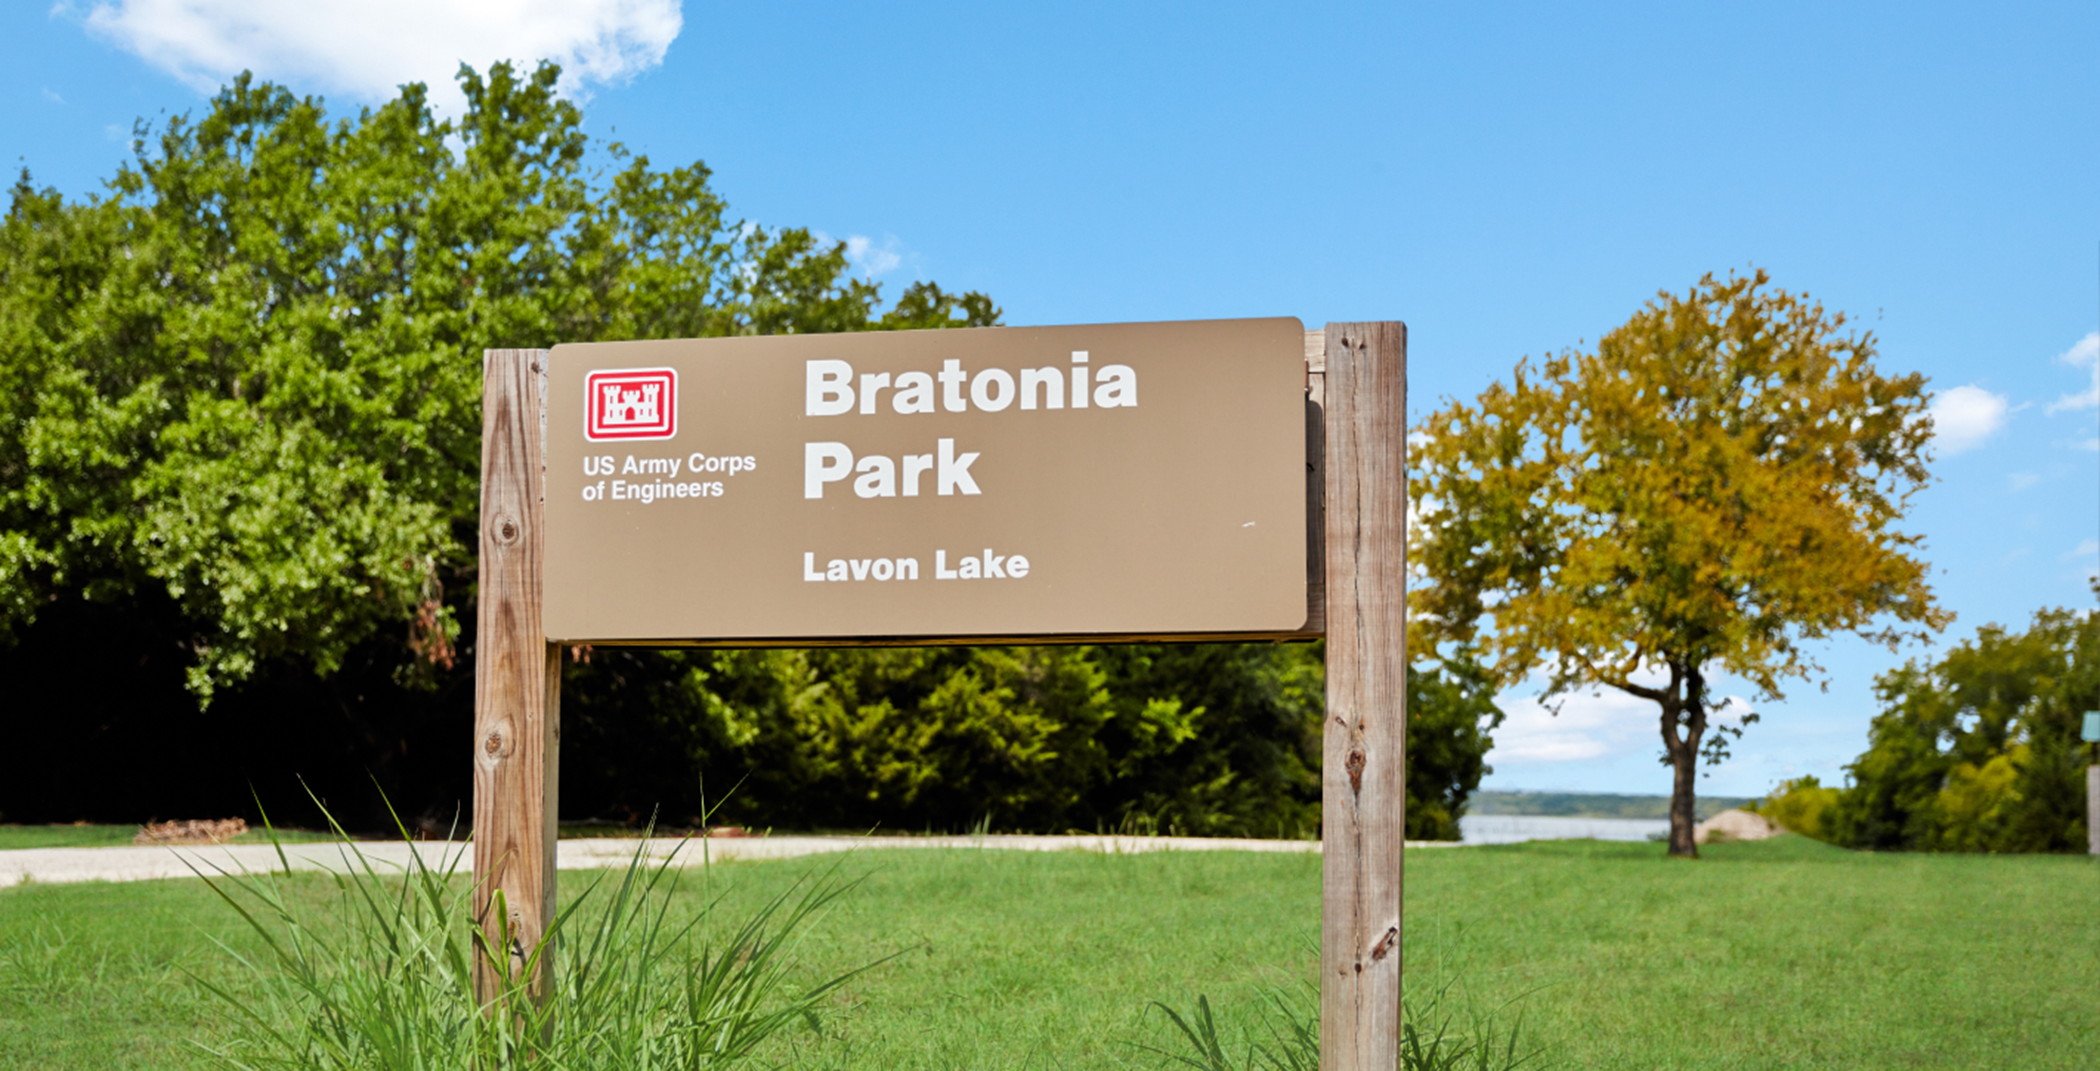 Bratonia Park nearby